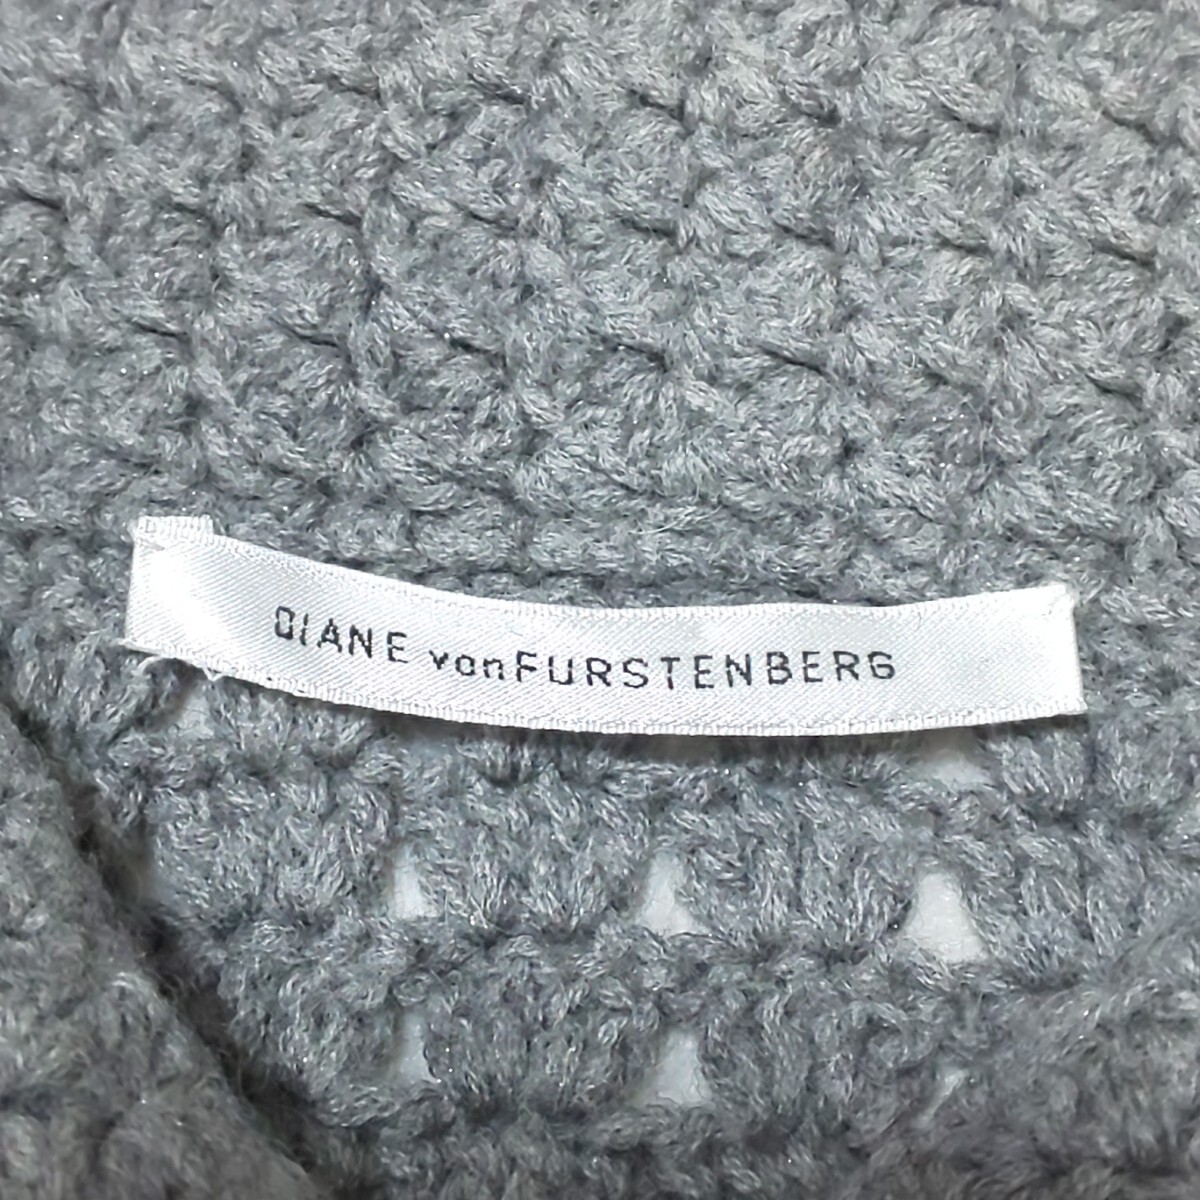 [ превосходный товар ]DIANE von FURSTENBERG Diane phone fa stain балка g средний мера кабель вязаный пальто длинное пальто шерстяное пальто серый 